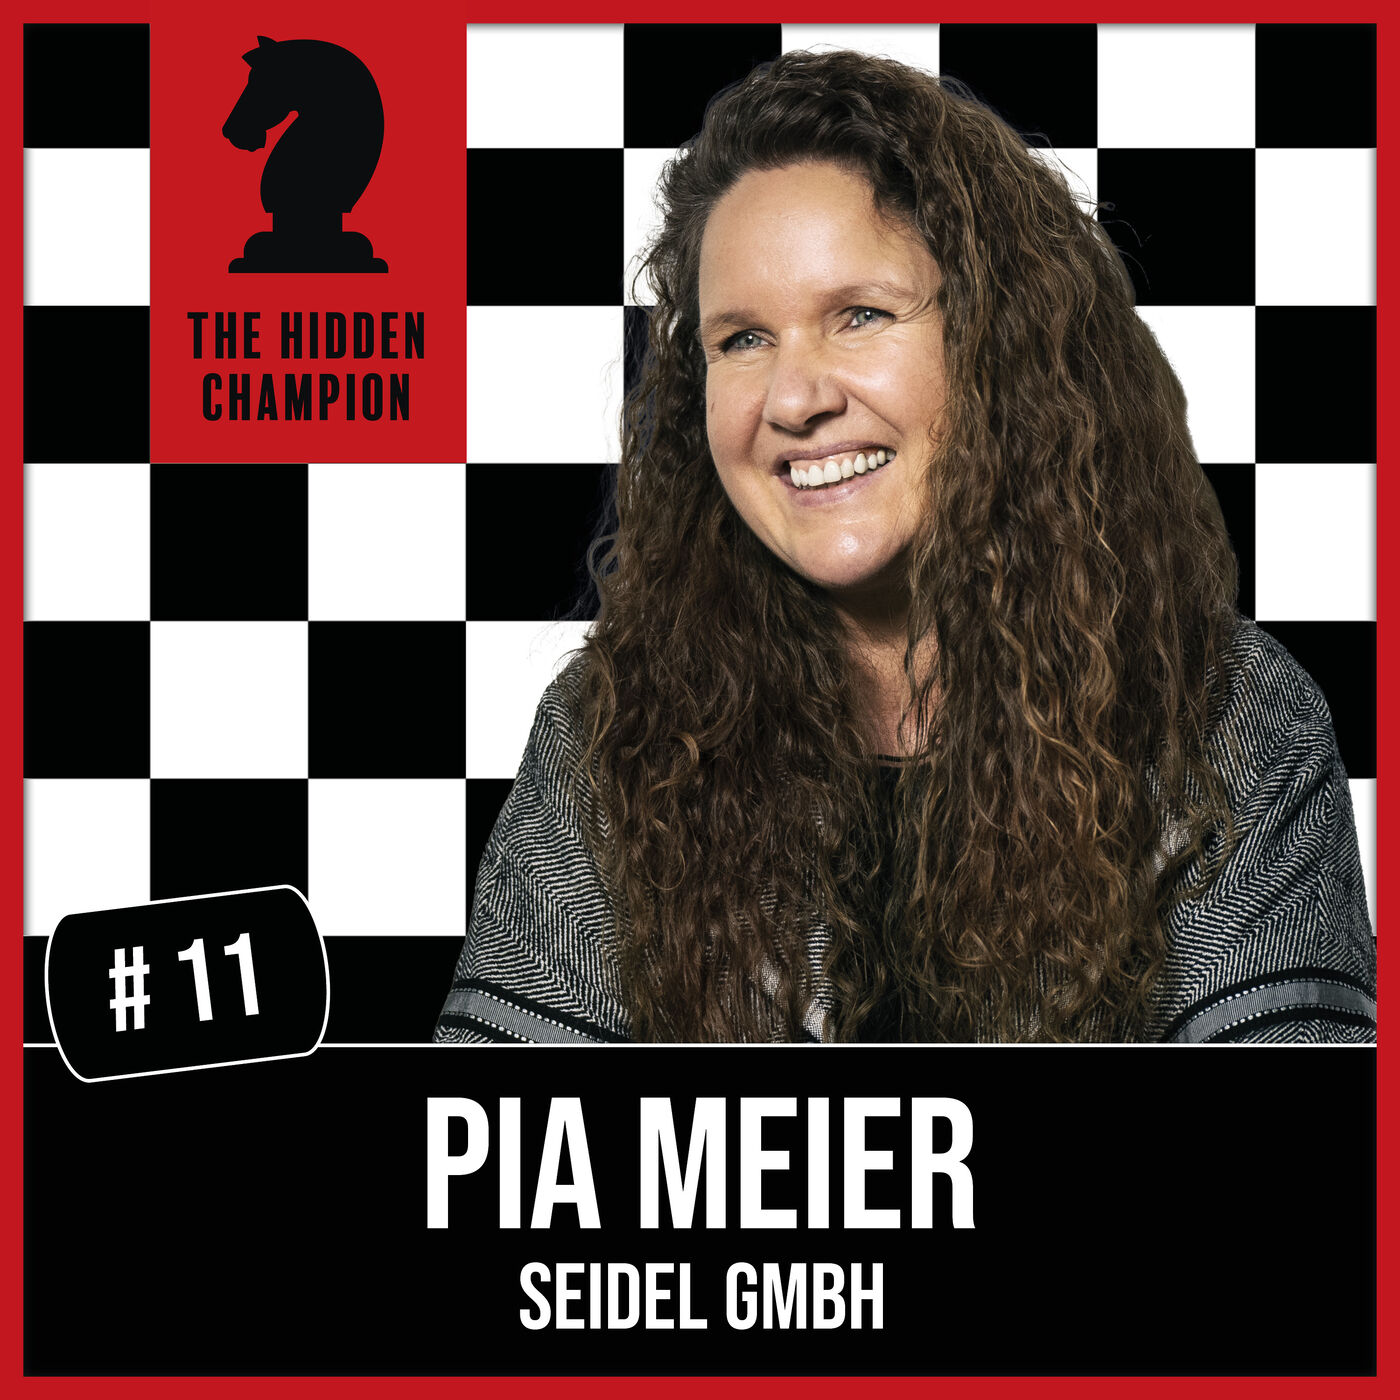 11. Mitarbeiter zu Mitunternehmer machen! Für Pia Meier ist Persönlichkeitsentwicklung der Schlüssel zum Erfolg.